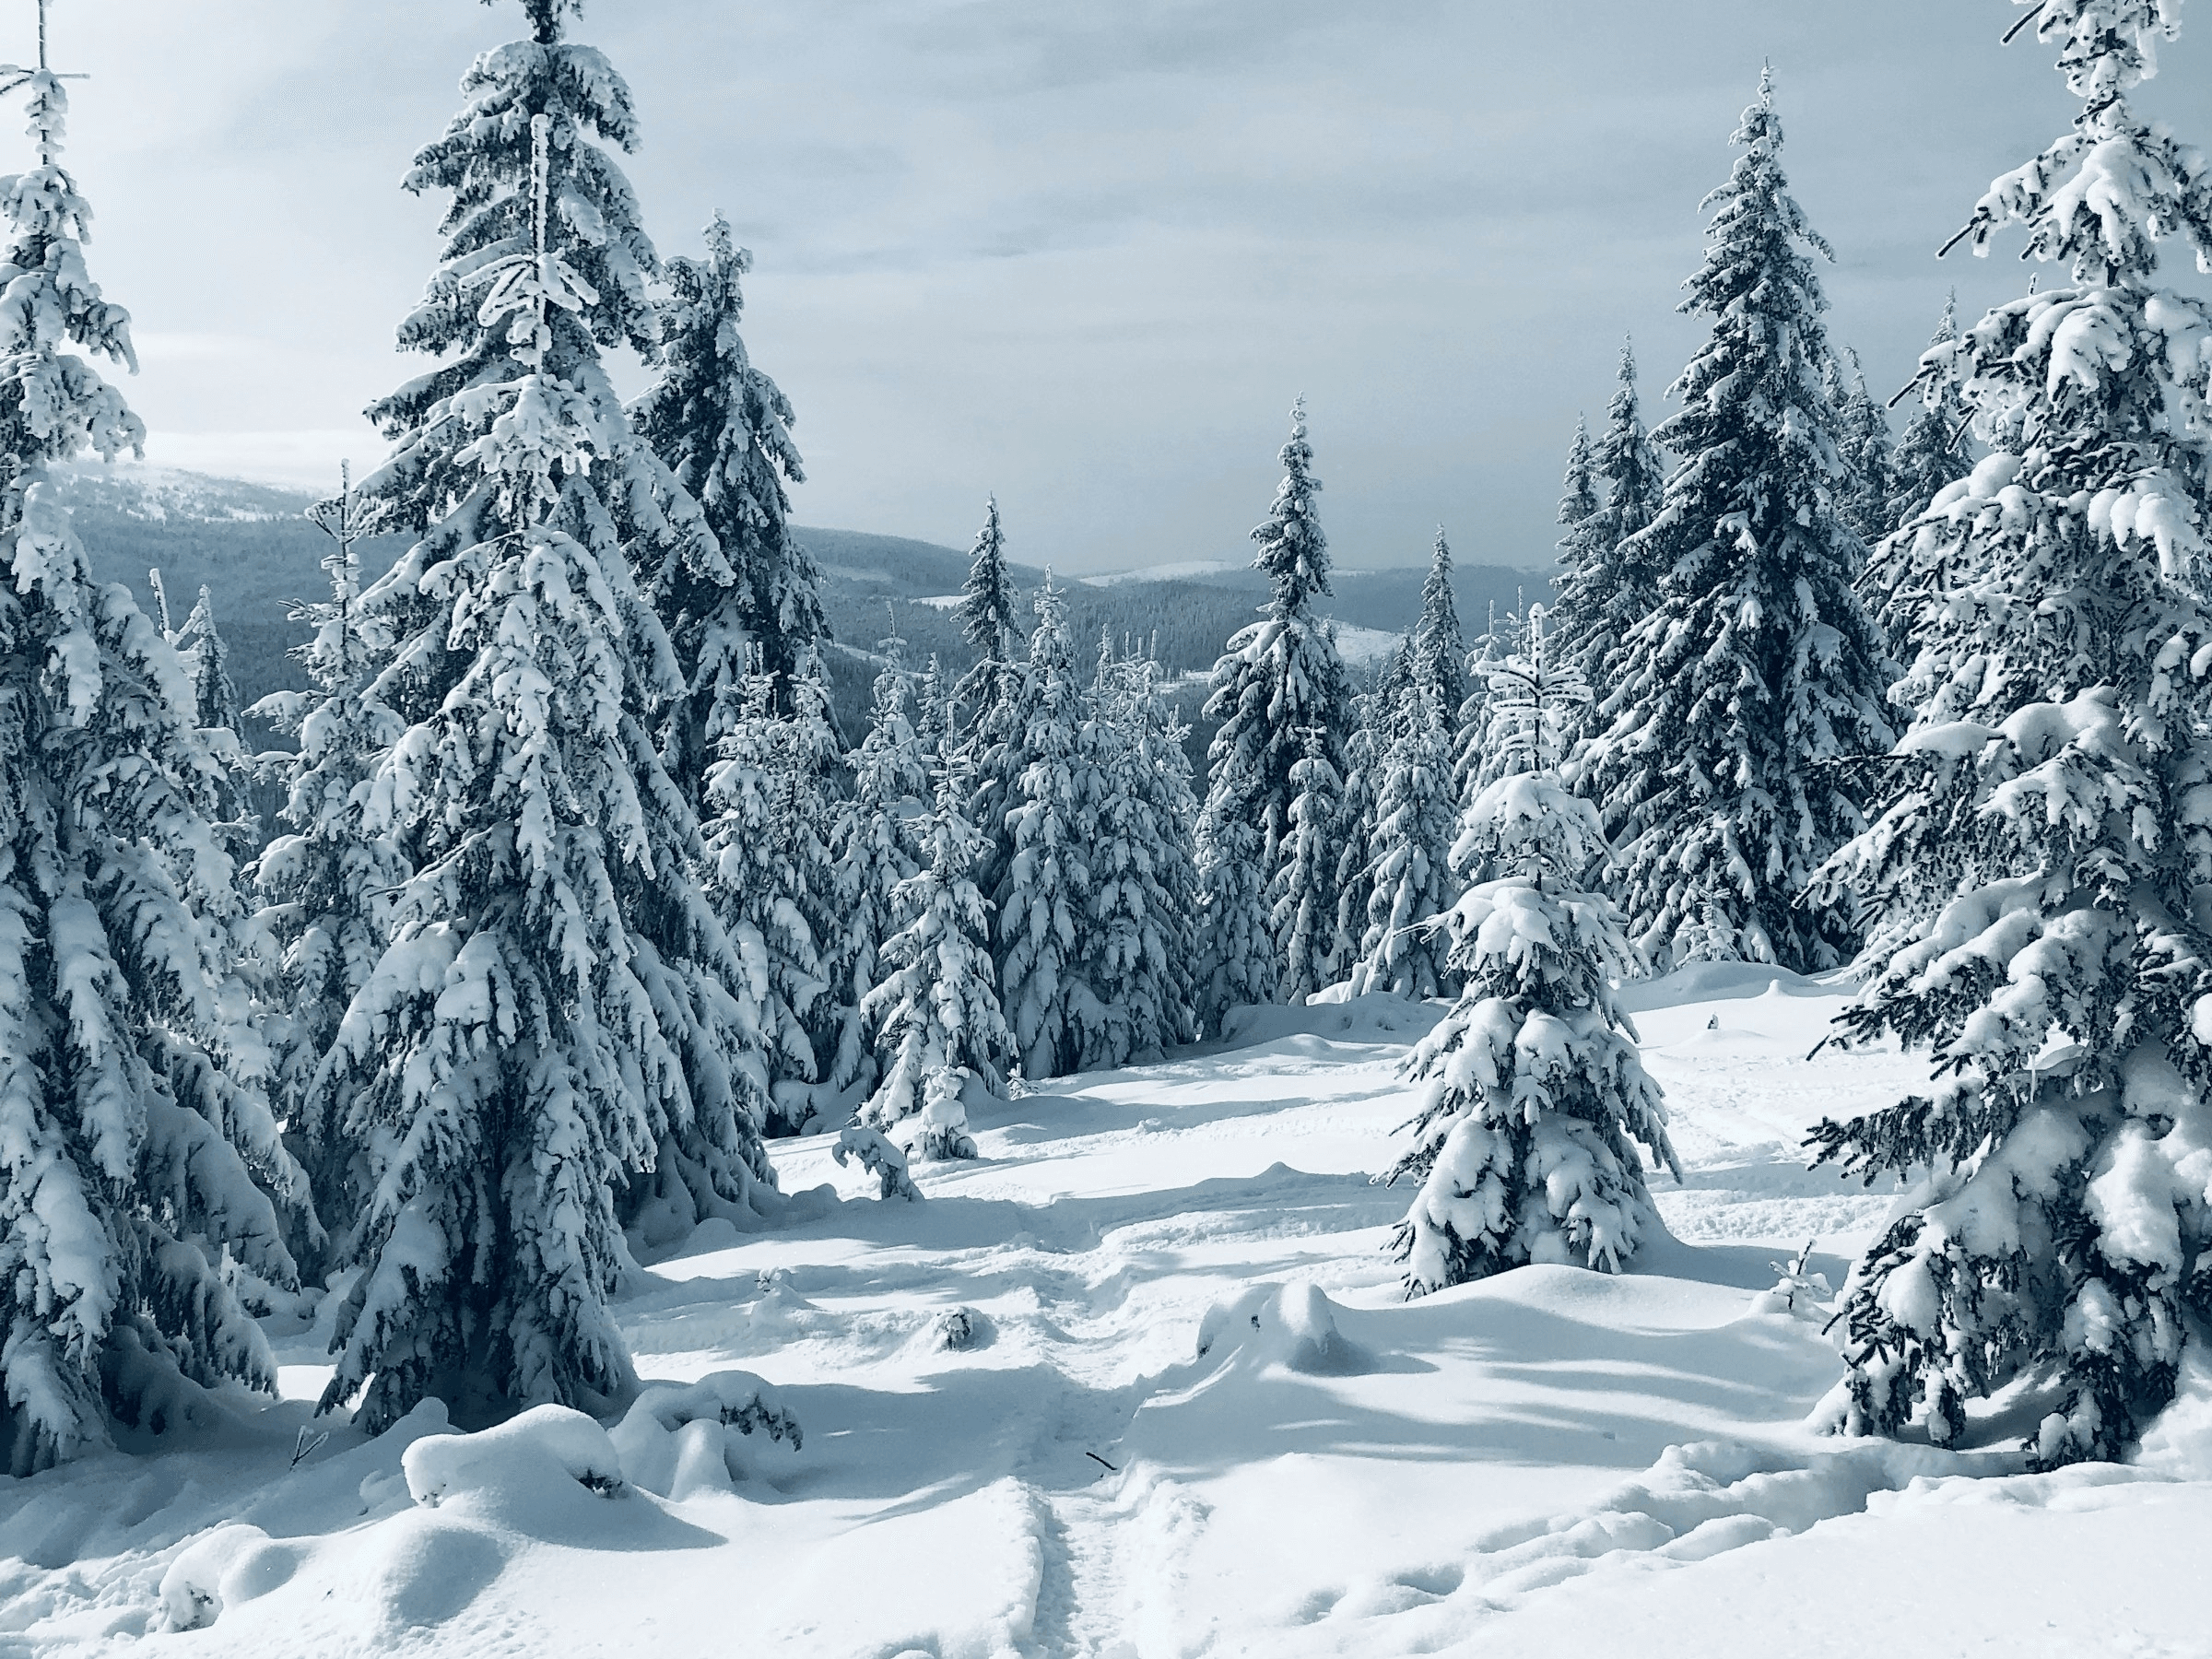 Verschneite Bäume in winterlicher Landschaft